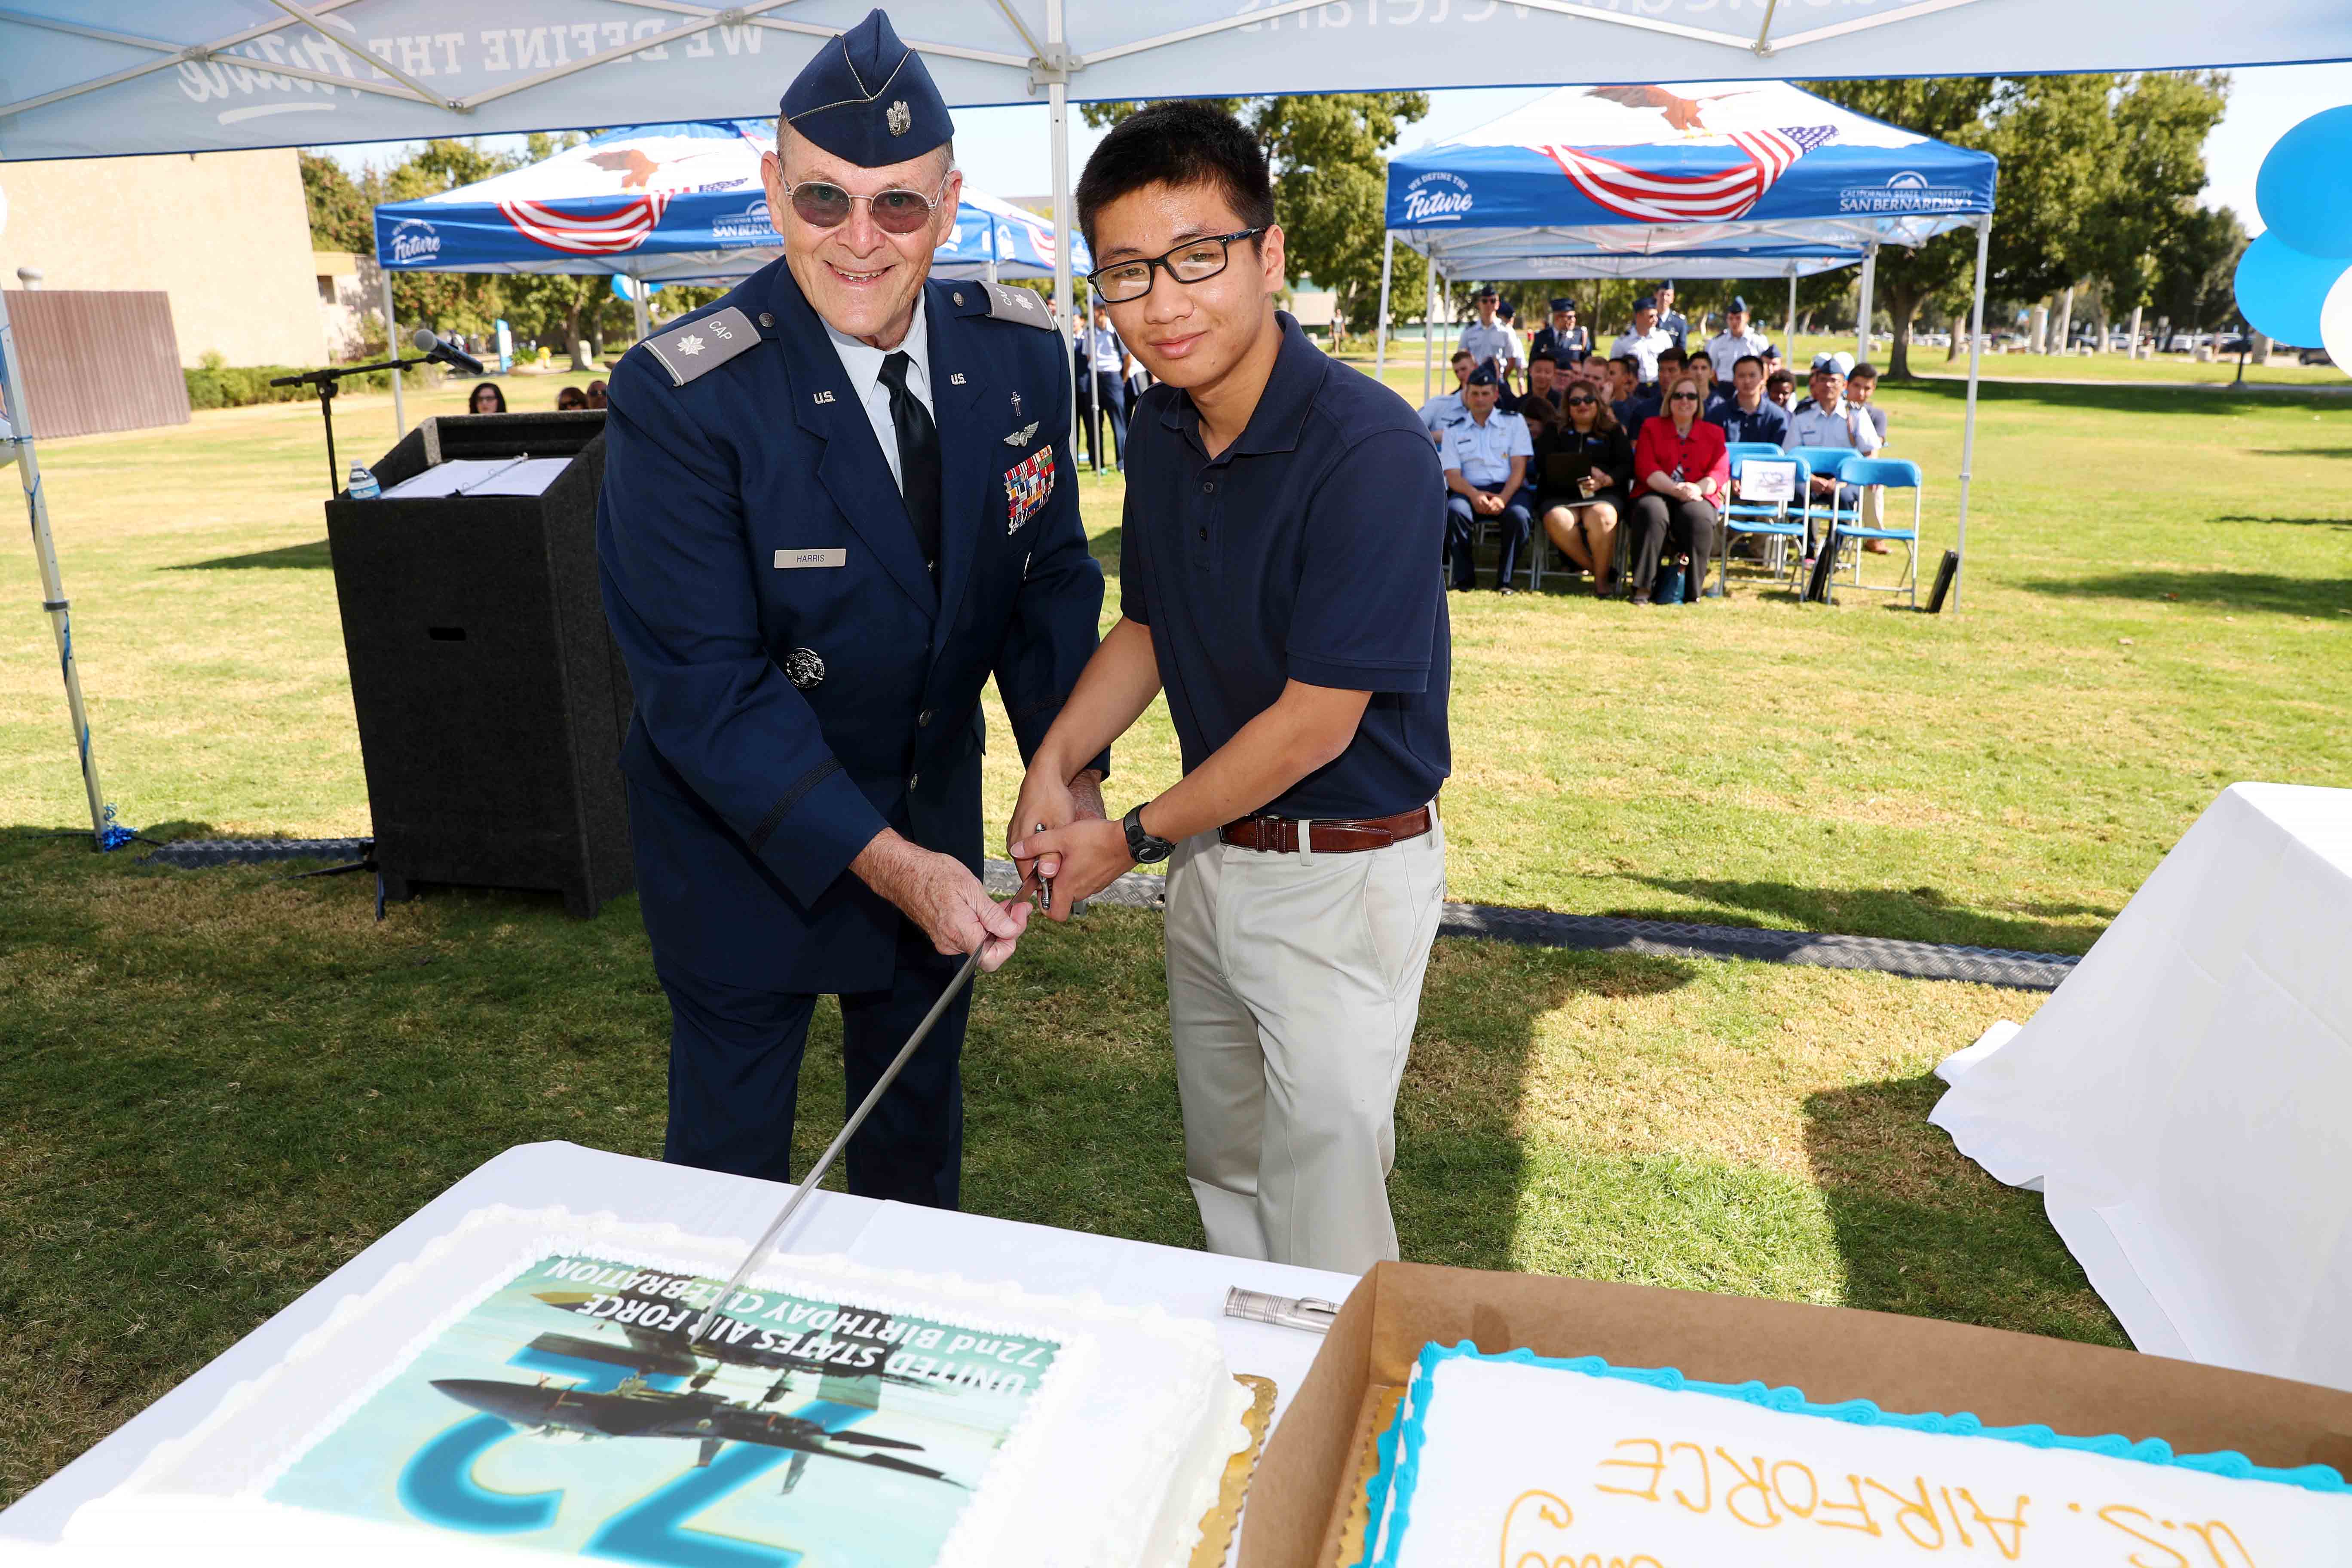 VSC USAF birthday cake cutting